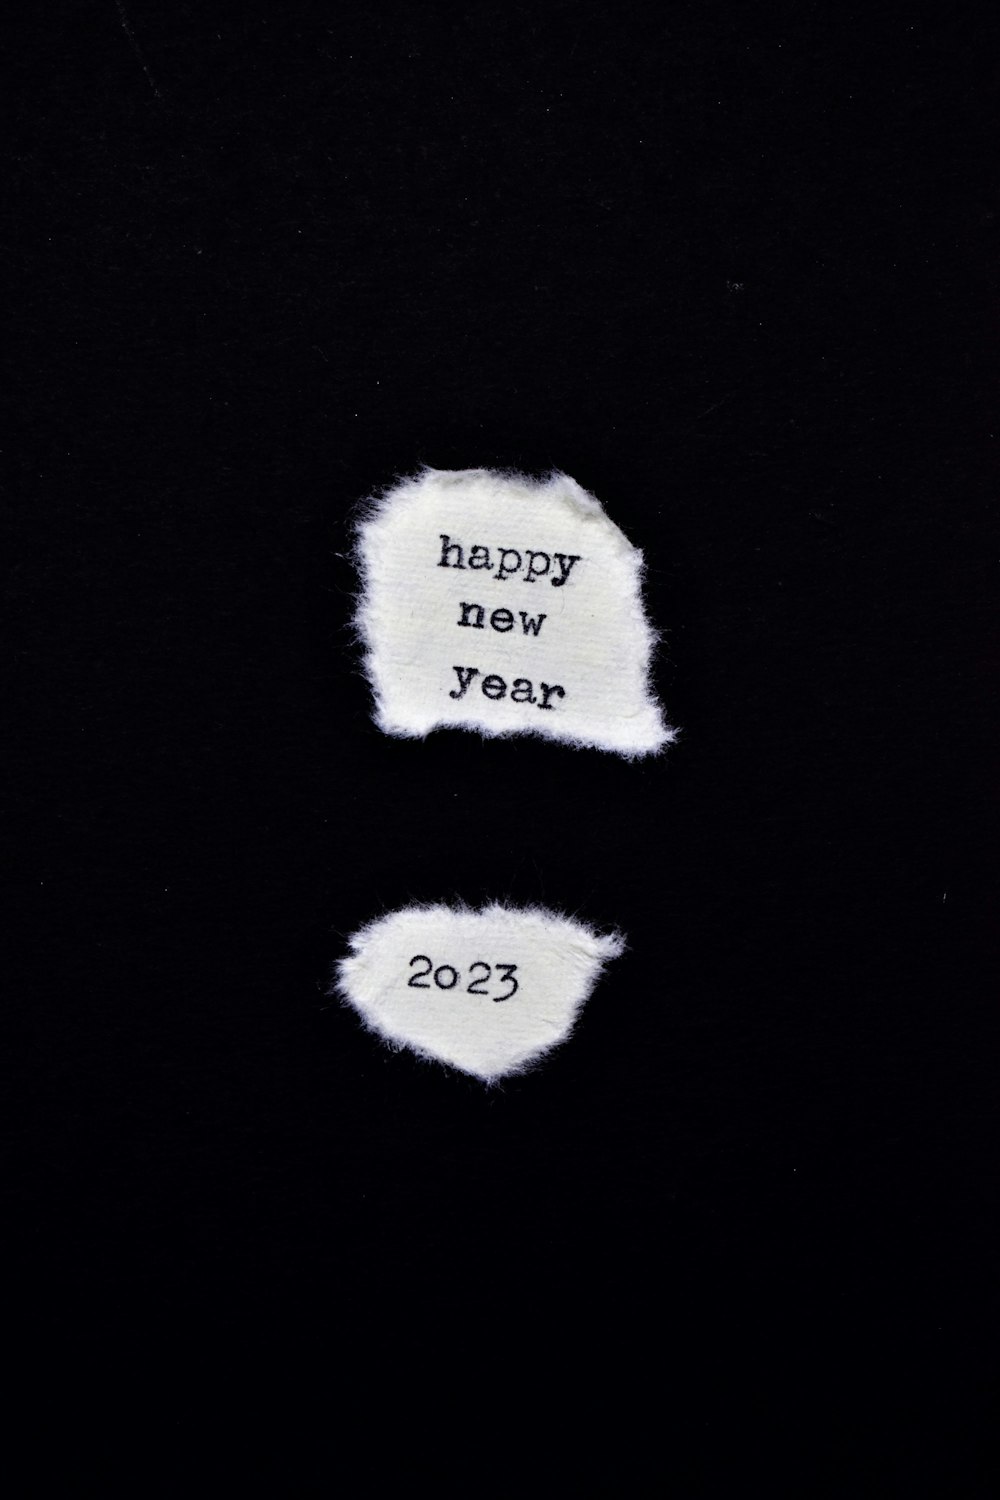 새해 복 많이 받으세요라는 단어가 적힌 종이 두 장